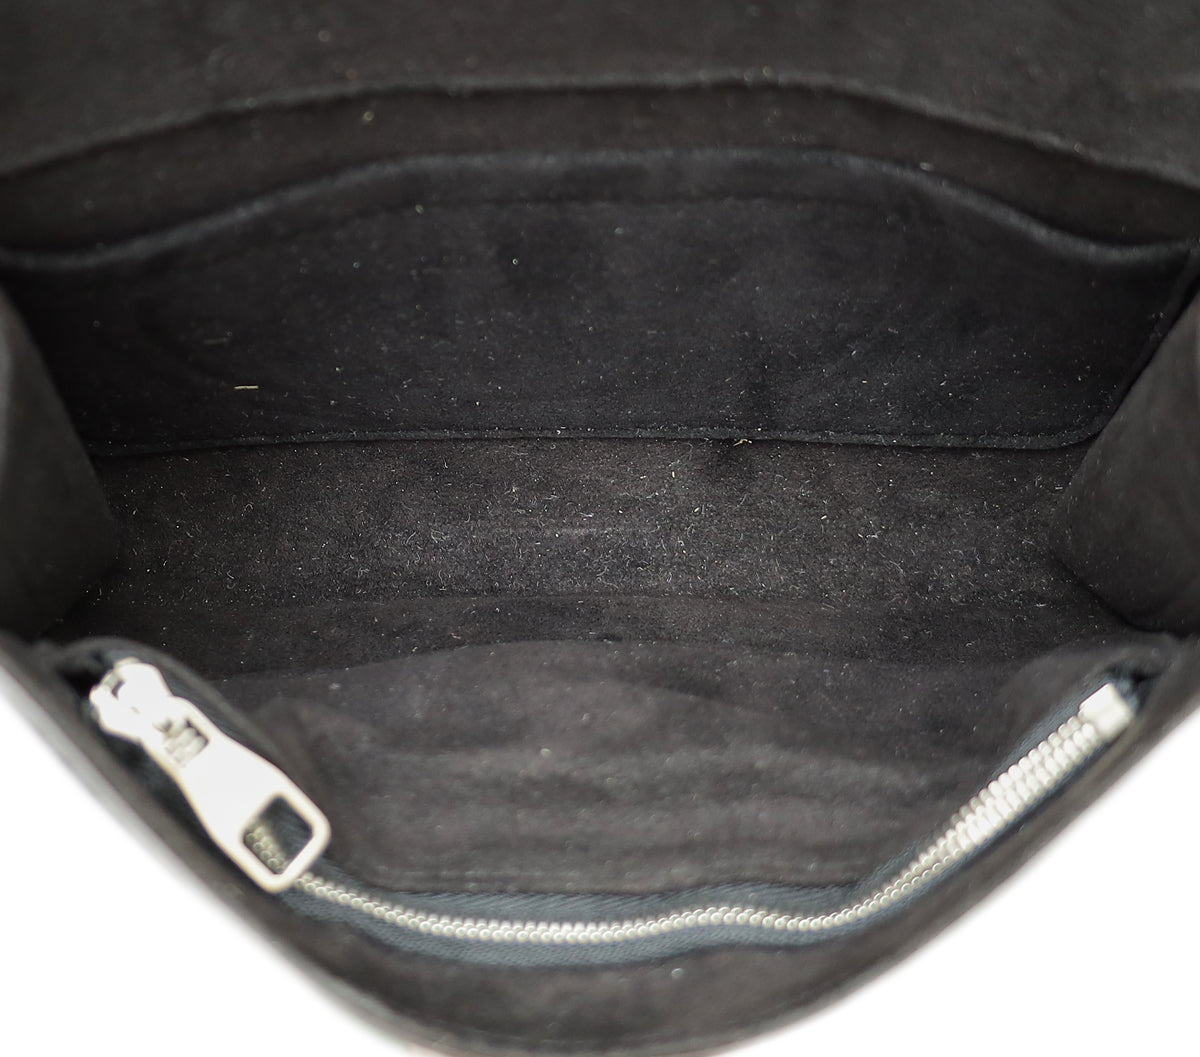 Louis Vuitton Black Louise Strap PM Bag